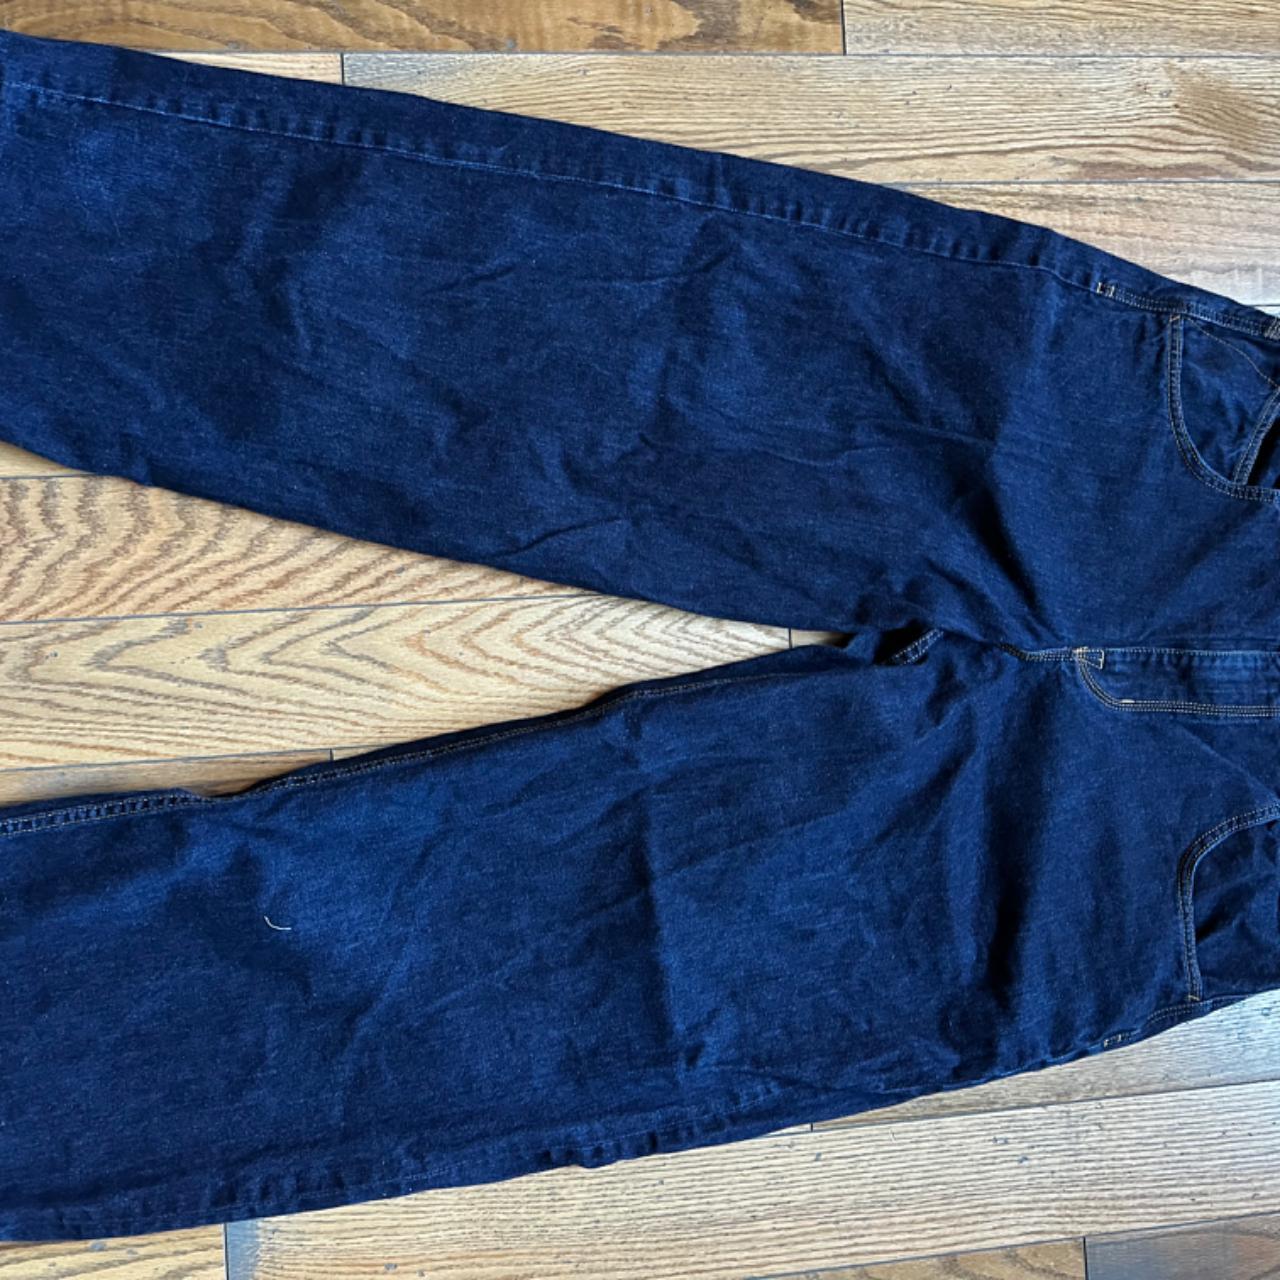 blue dark wash jnco 85s size 40 - Depop